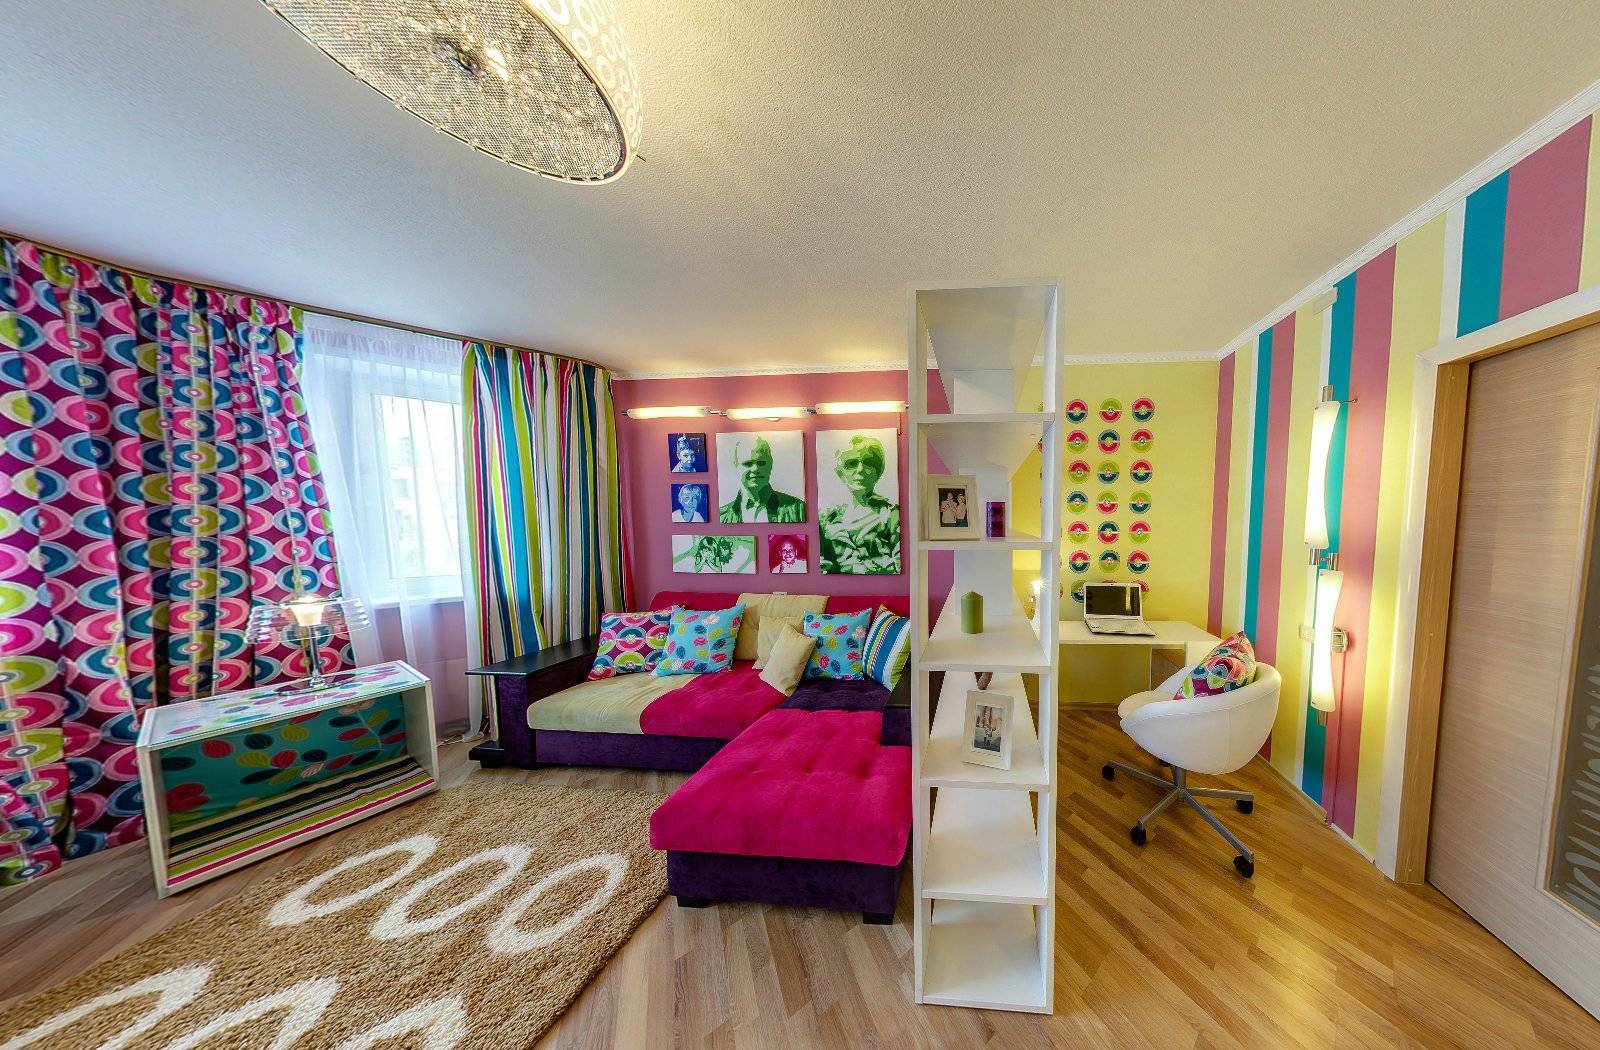 Комната для двух девочек подростков, сестер разного возраста: спальня в современном стиле - 47 фото